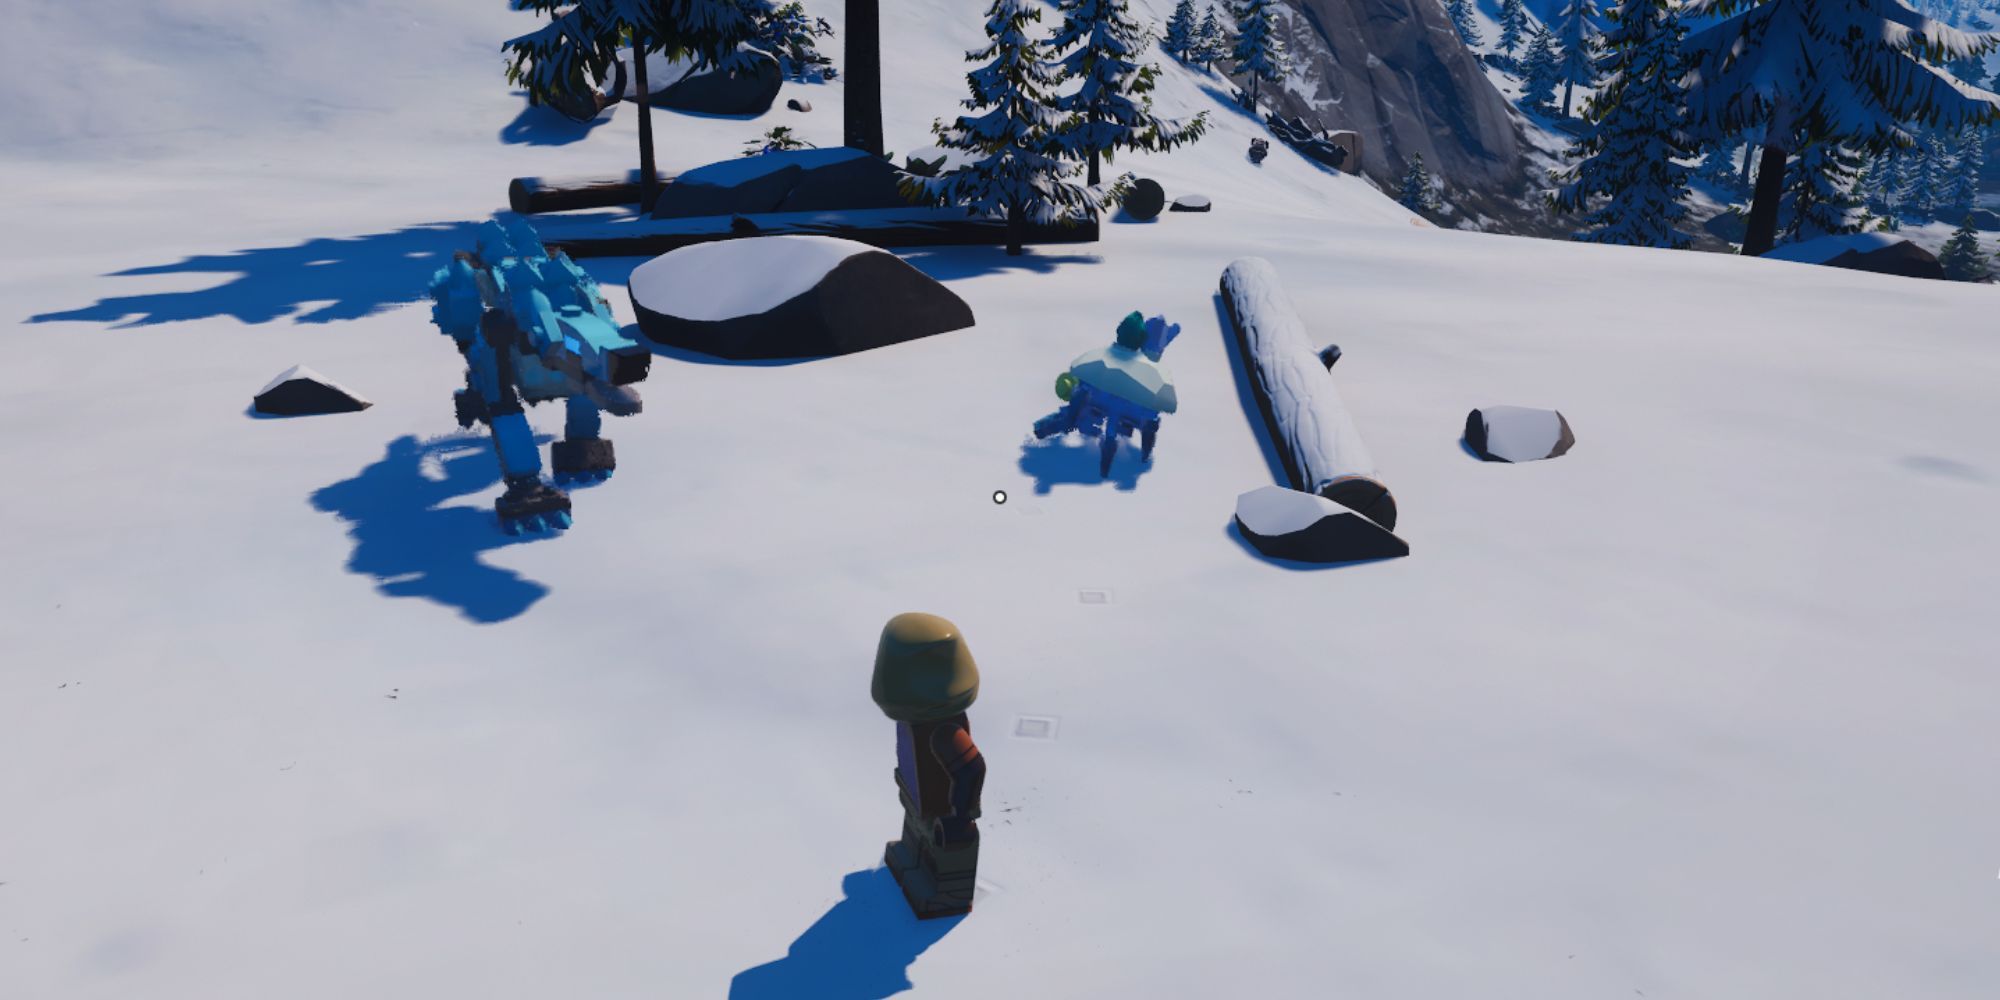 Ein verschneites Biom, das einige Bäume, einen Felsen, einen großen blauen Wolf und einen kleinen, krabbenähnlichen Feind zeigt, der mit Schnee bedeckt ist.